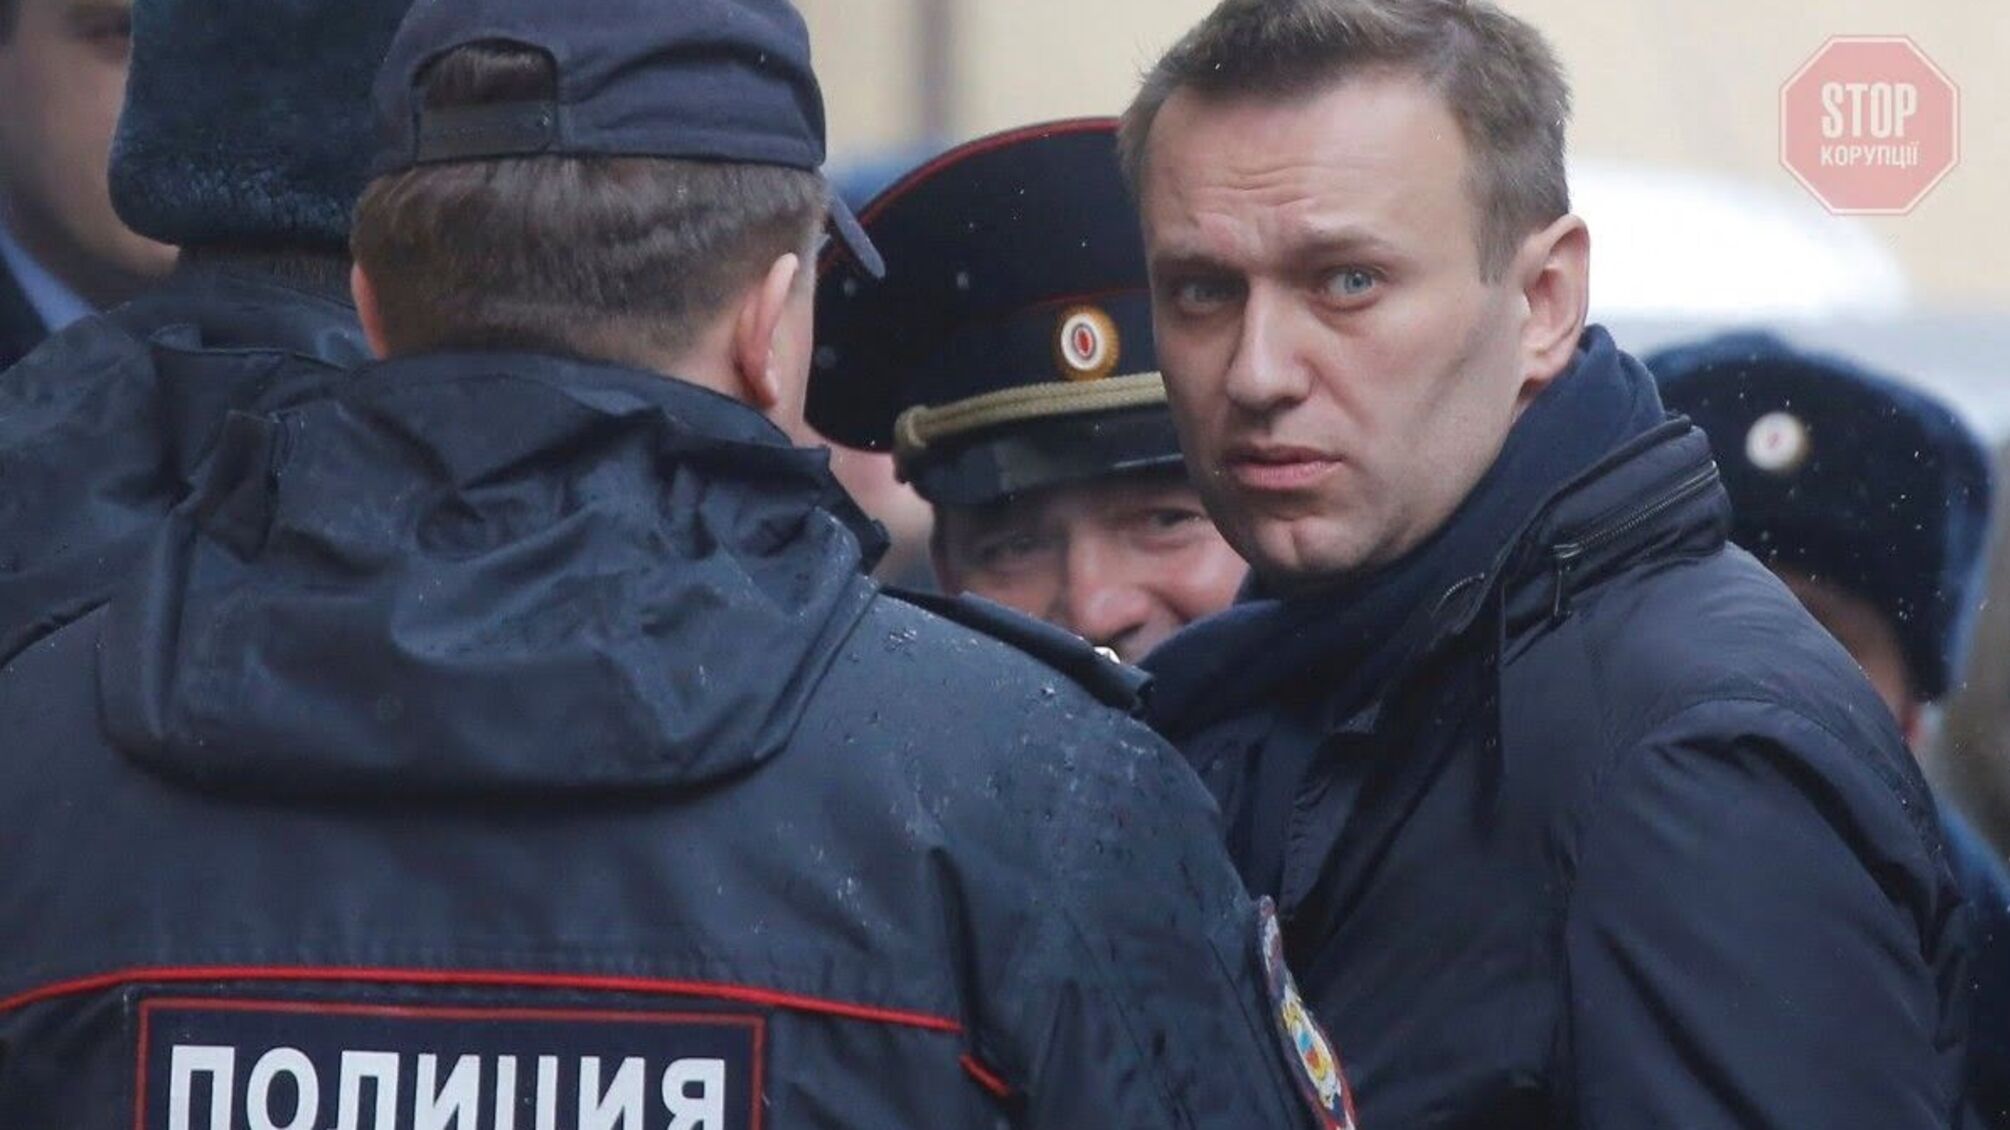 Администрация Байдена готовит санкции против России из-за отравления Навального, - СМИ